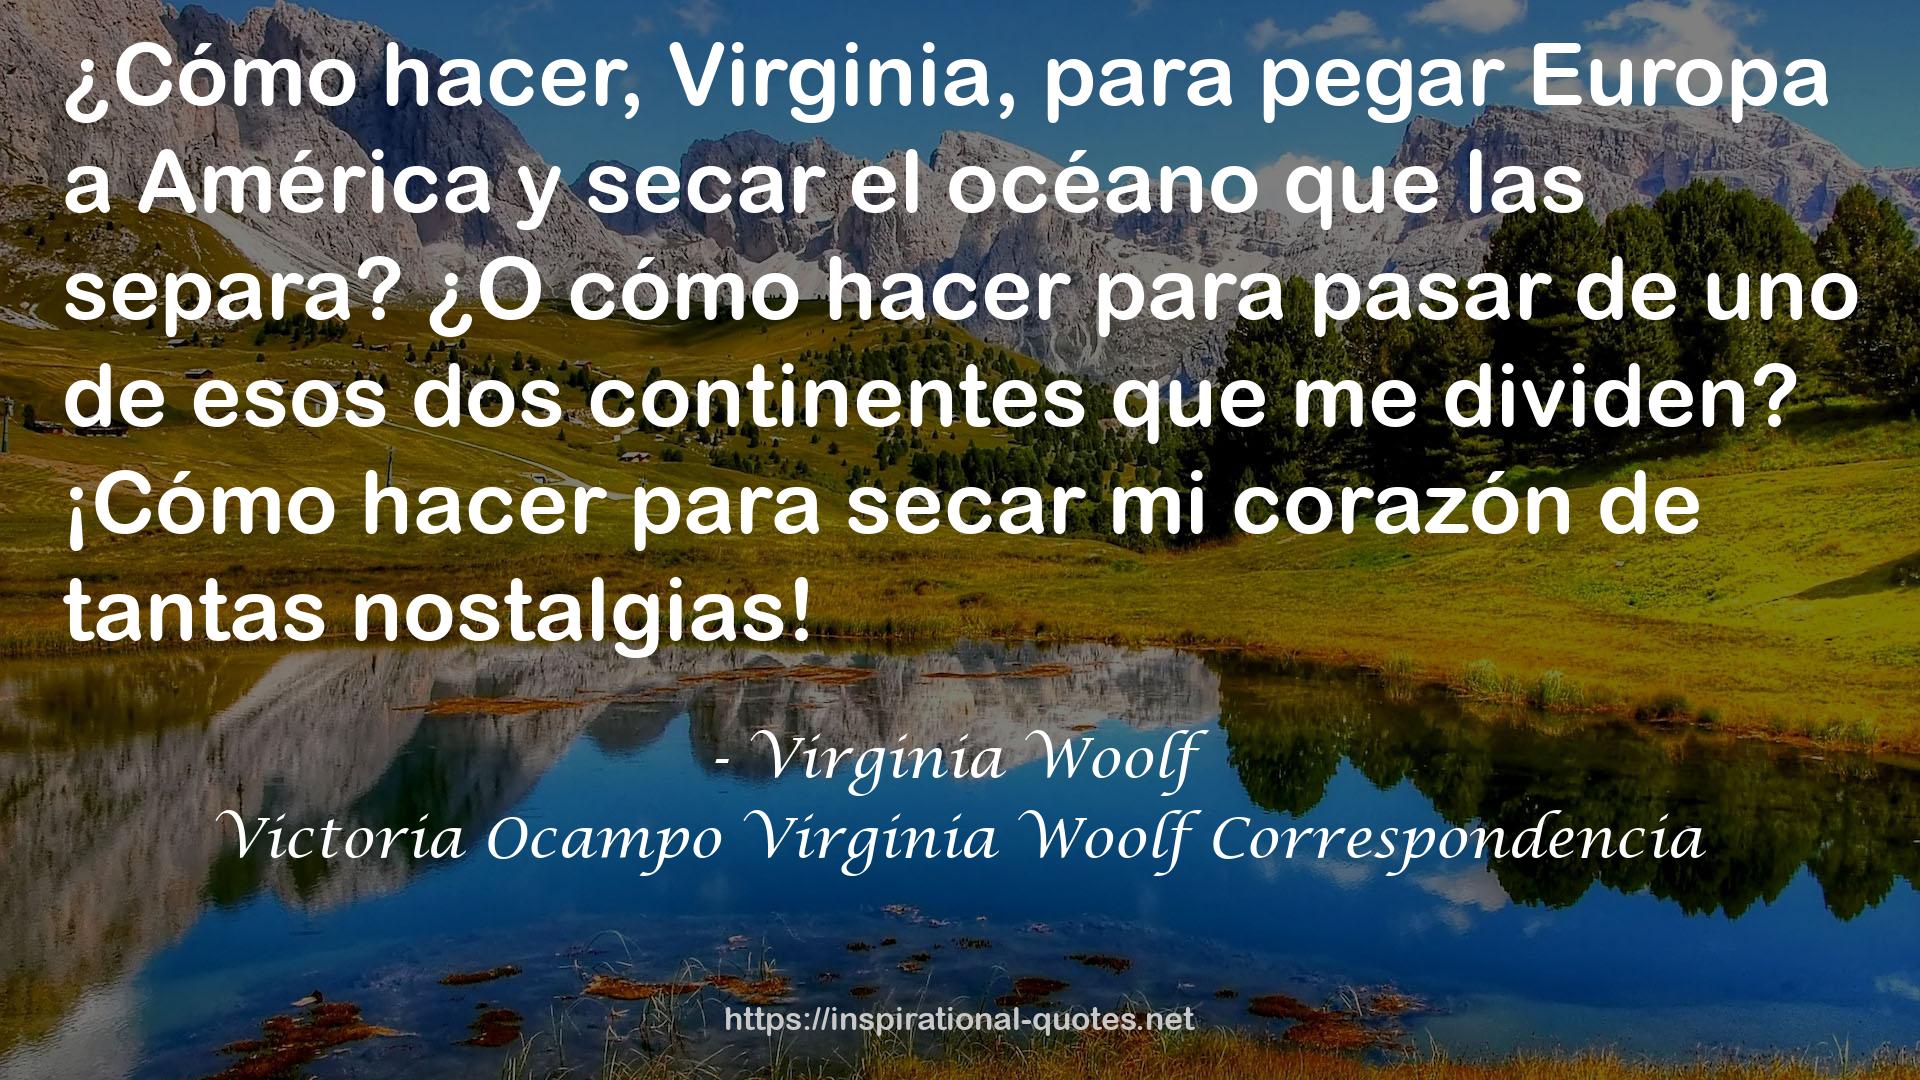 Victoria Ocampo Virginia Woolf Correspondencia QUOTES